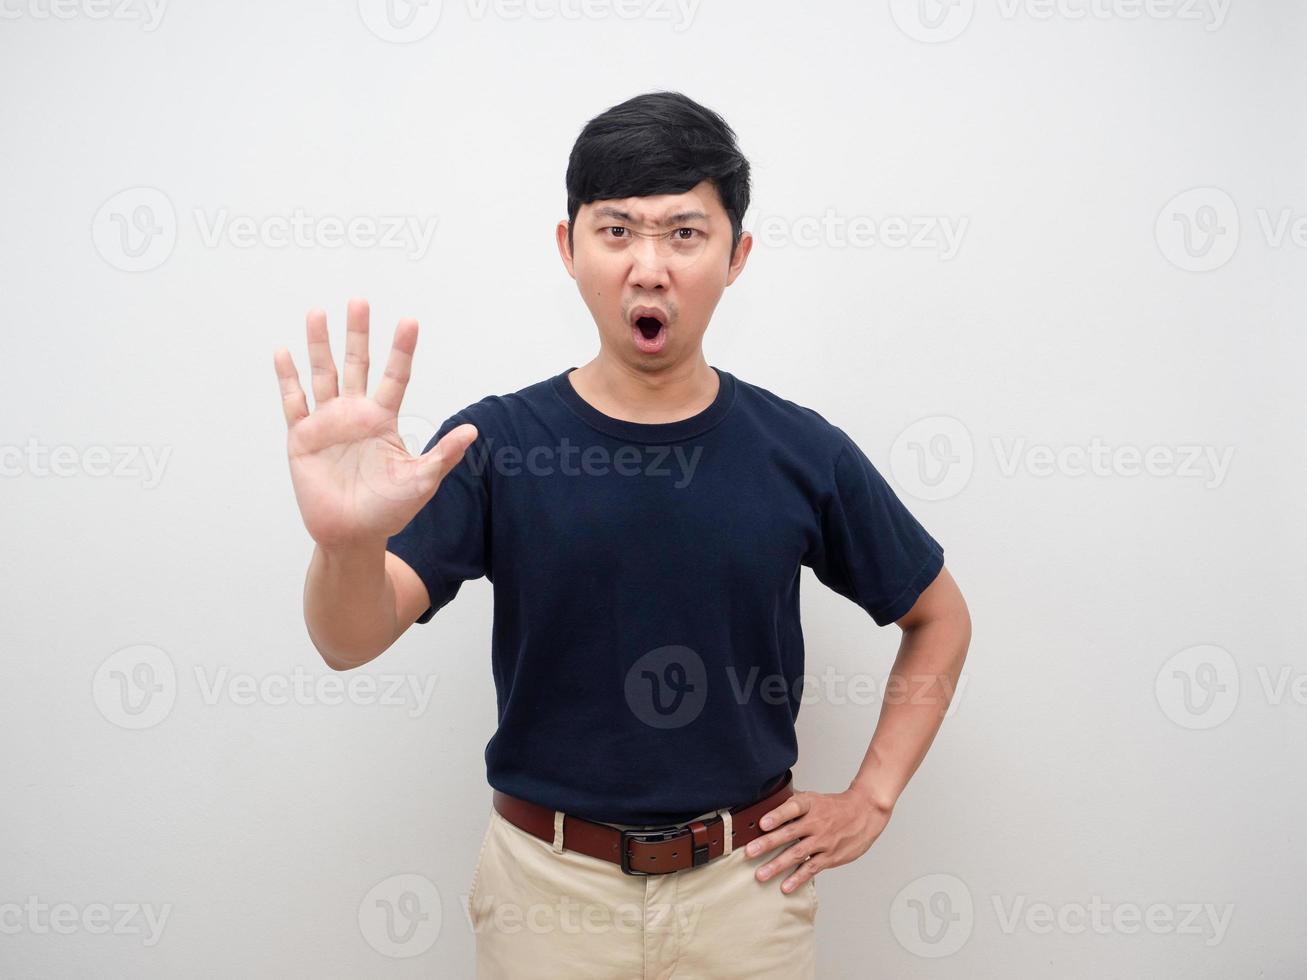 asien mann ernsthafte emotion zeigen handstopp und taille sagen nein isoliert foto